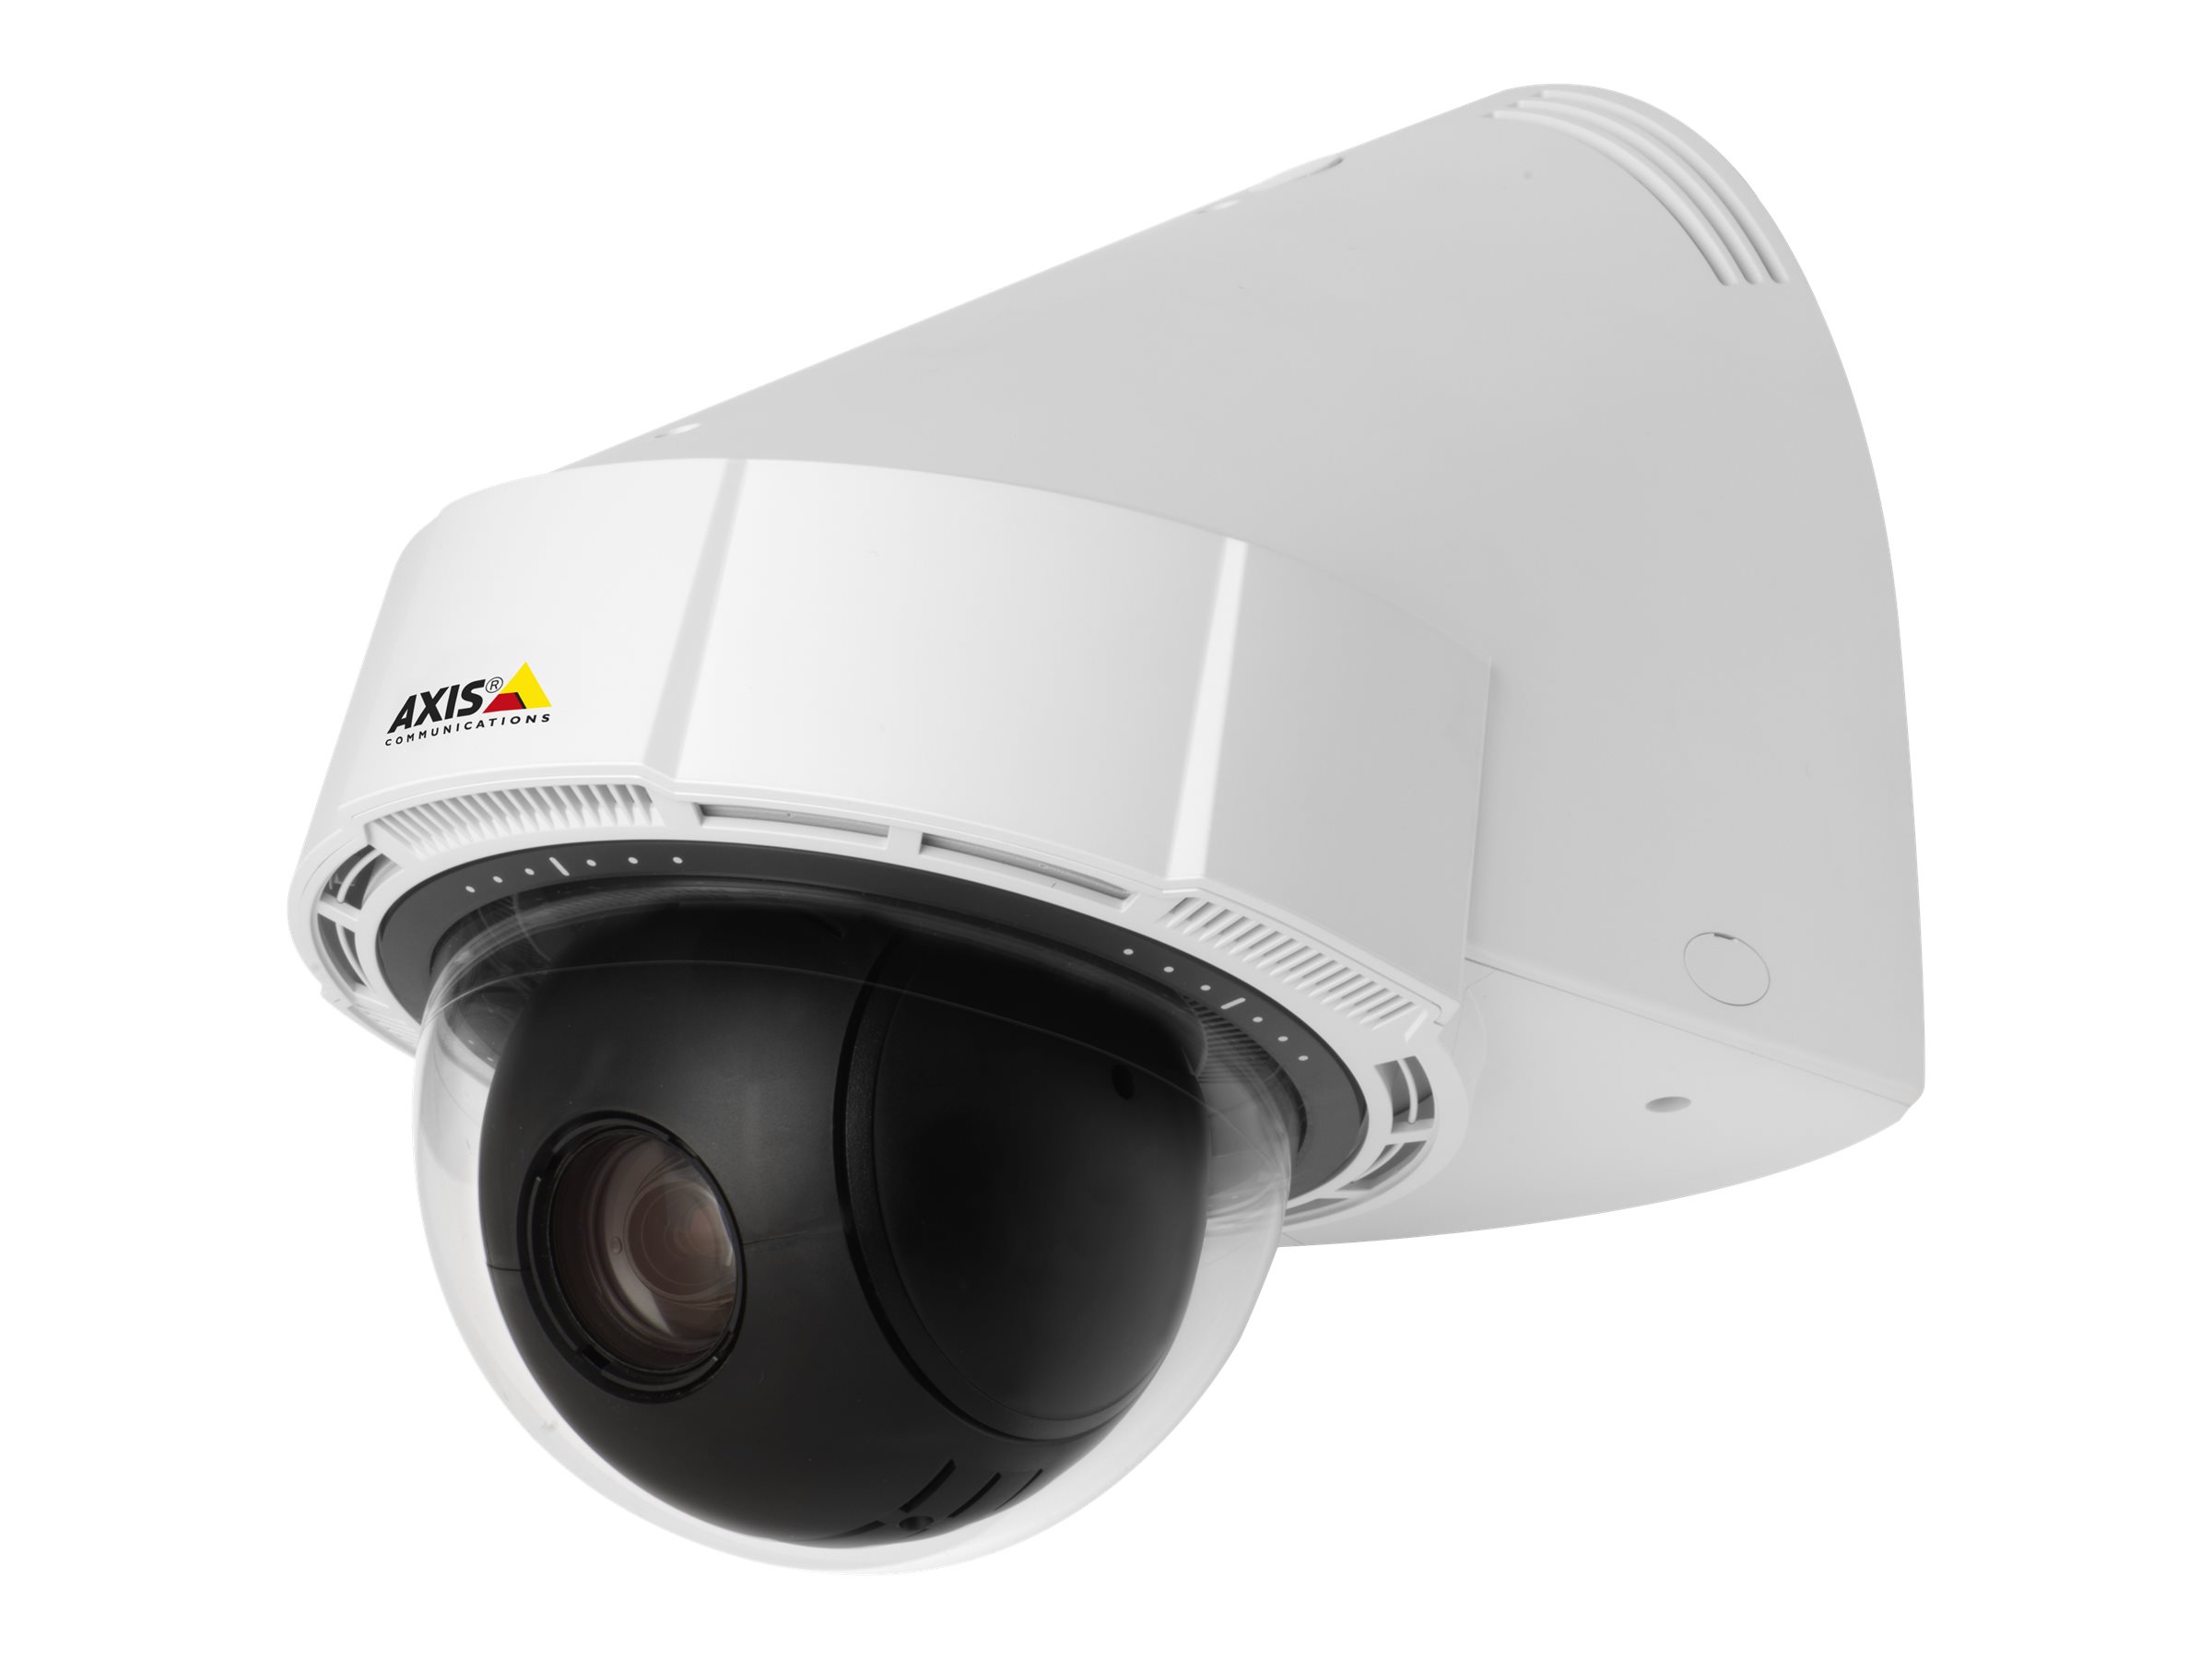 AXIS P5414-E PTZ Dome Network Camera 50Hz - Netzwerk-Überwachungskamera - PTZ - Aussenbereich - vandalismusresistent/wasserfest 